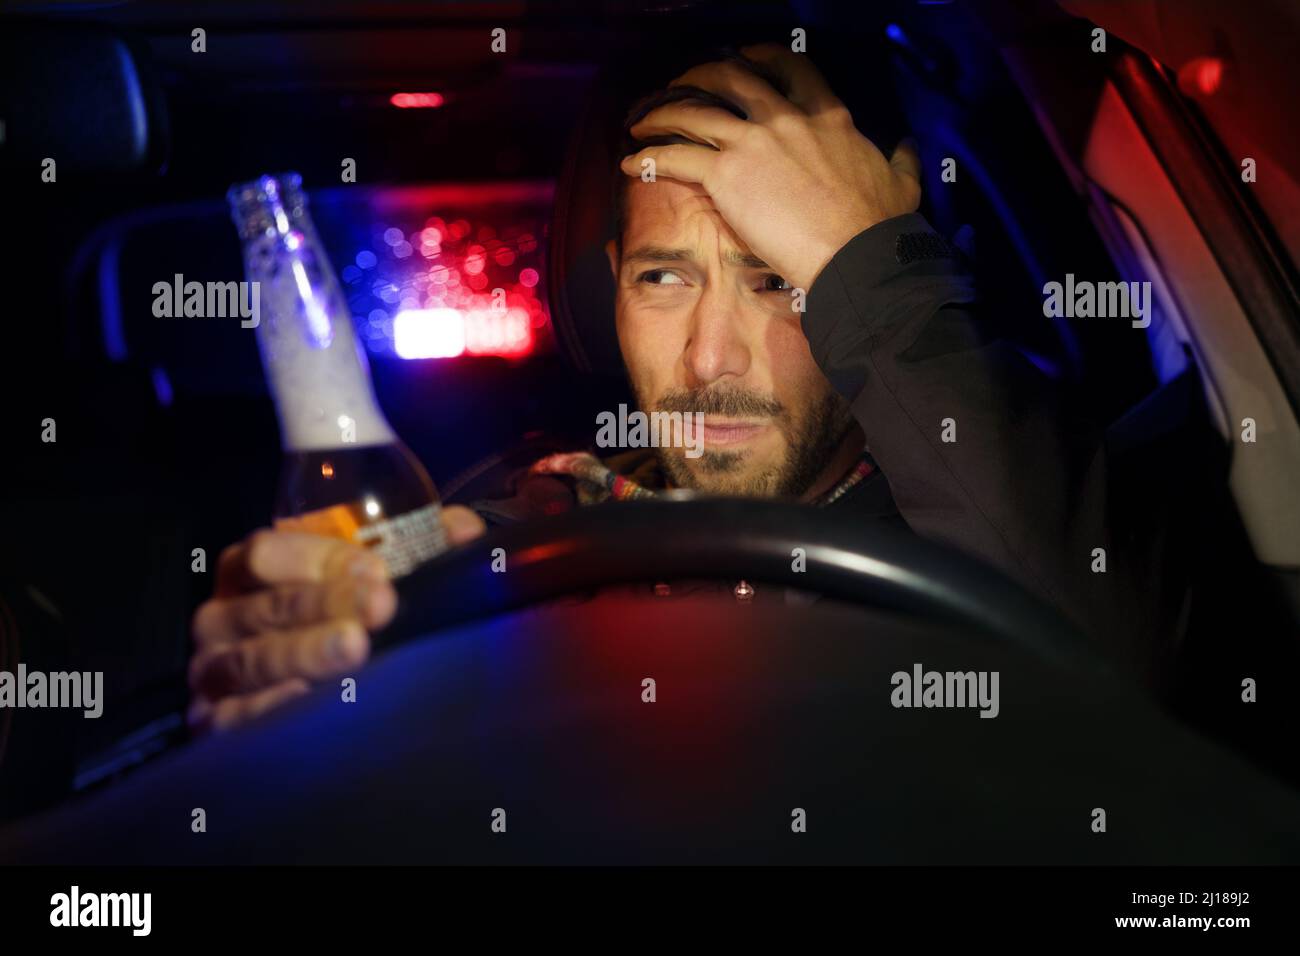 Homme ivre conduisant la voiture. La police a arrêté le conducteur sous influence d'alcool Banque D'Images